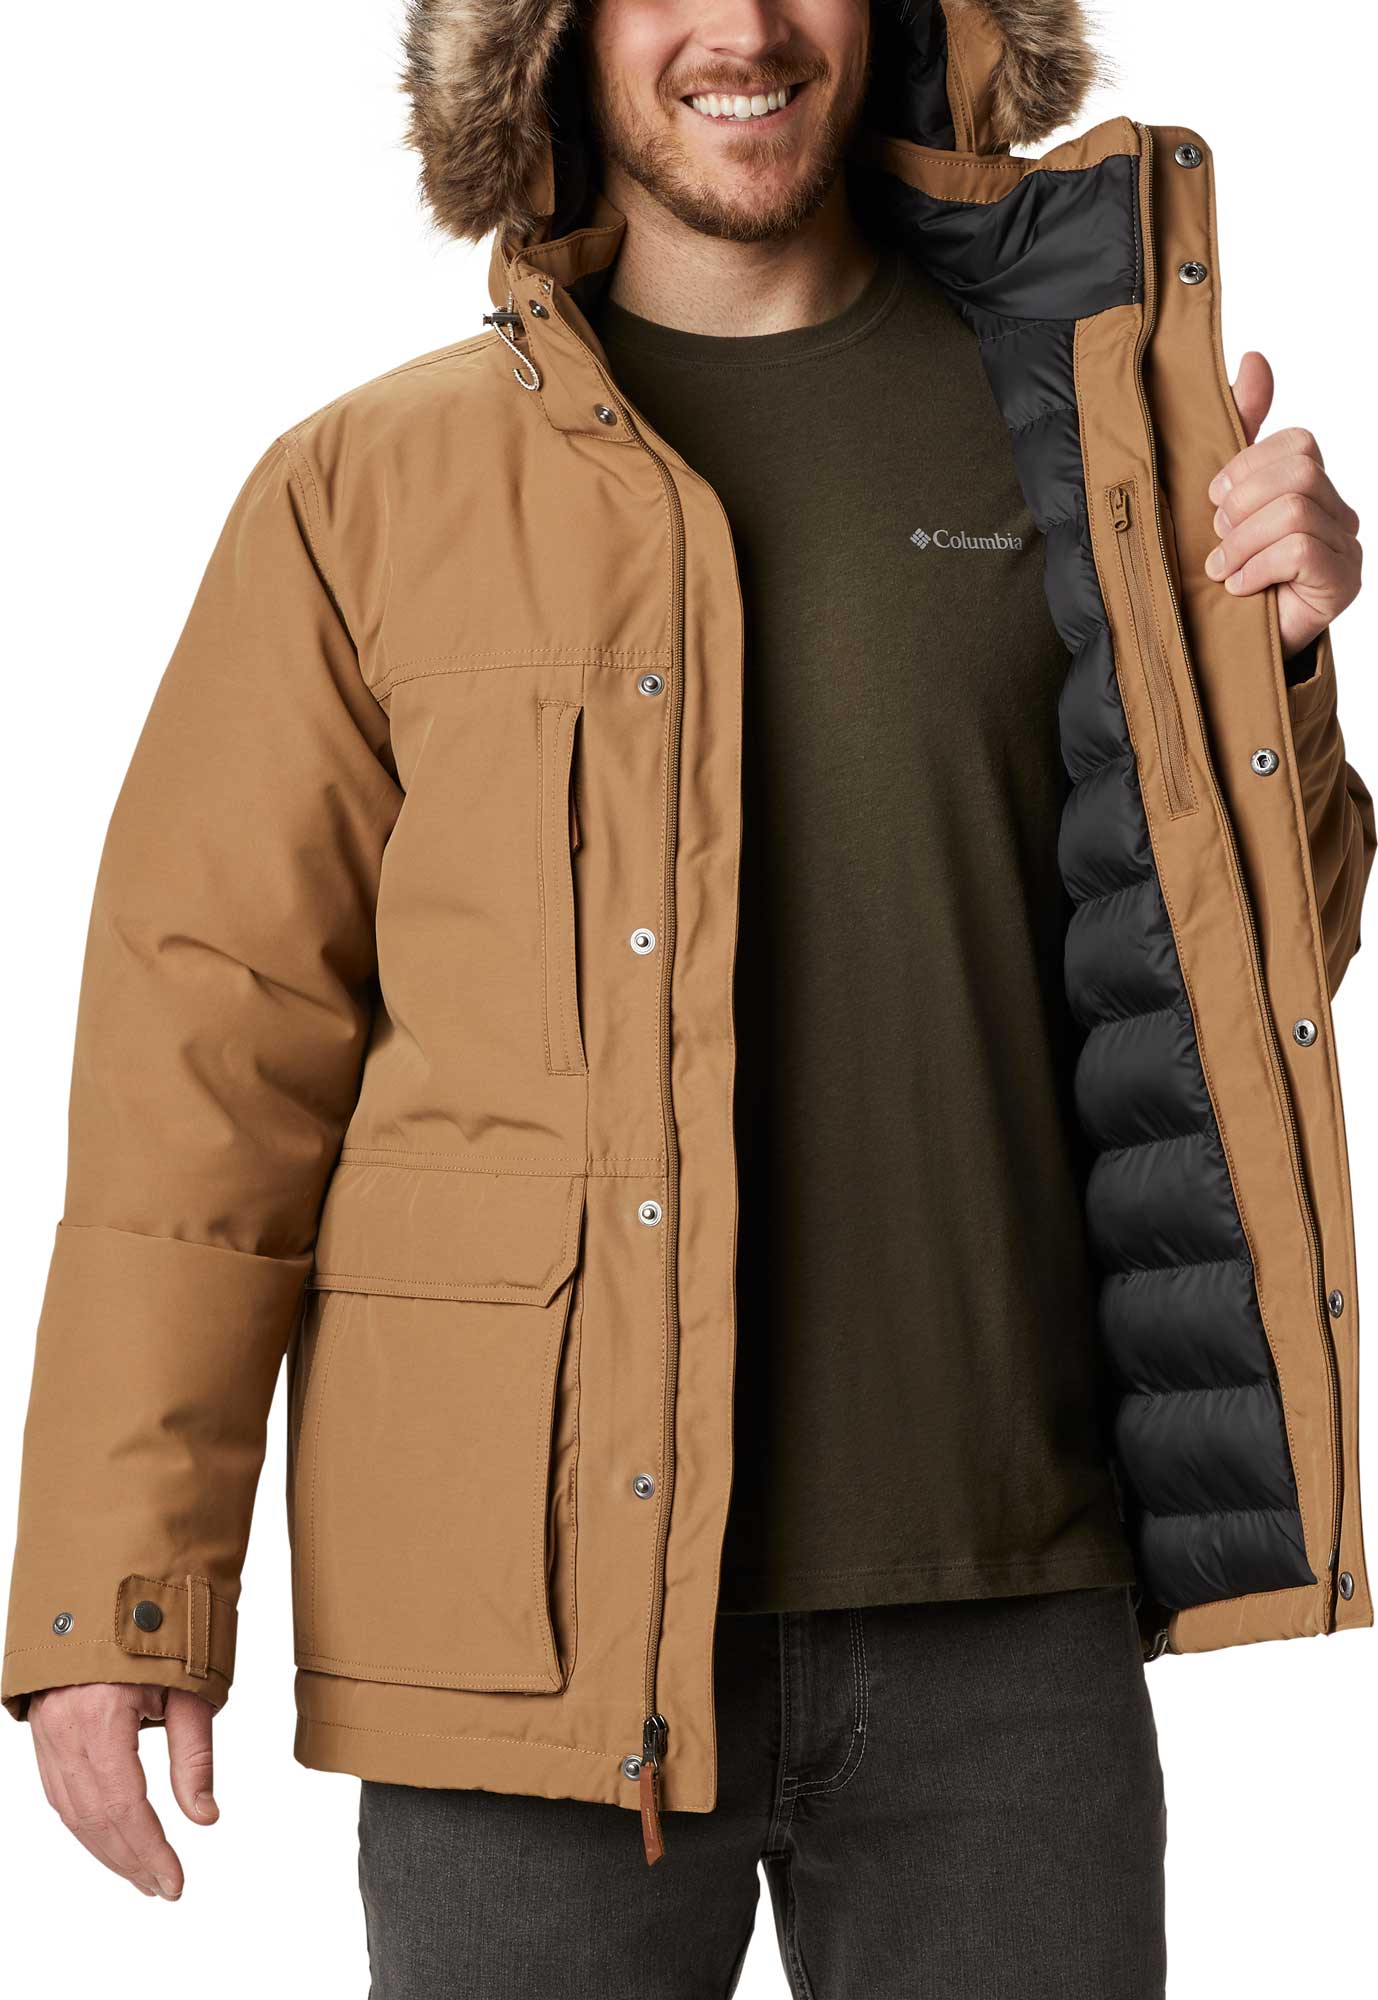 Men’s winter jacket